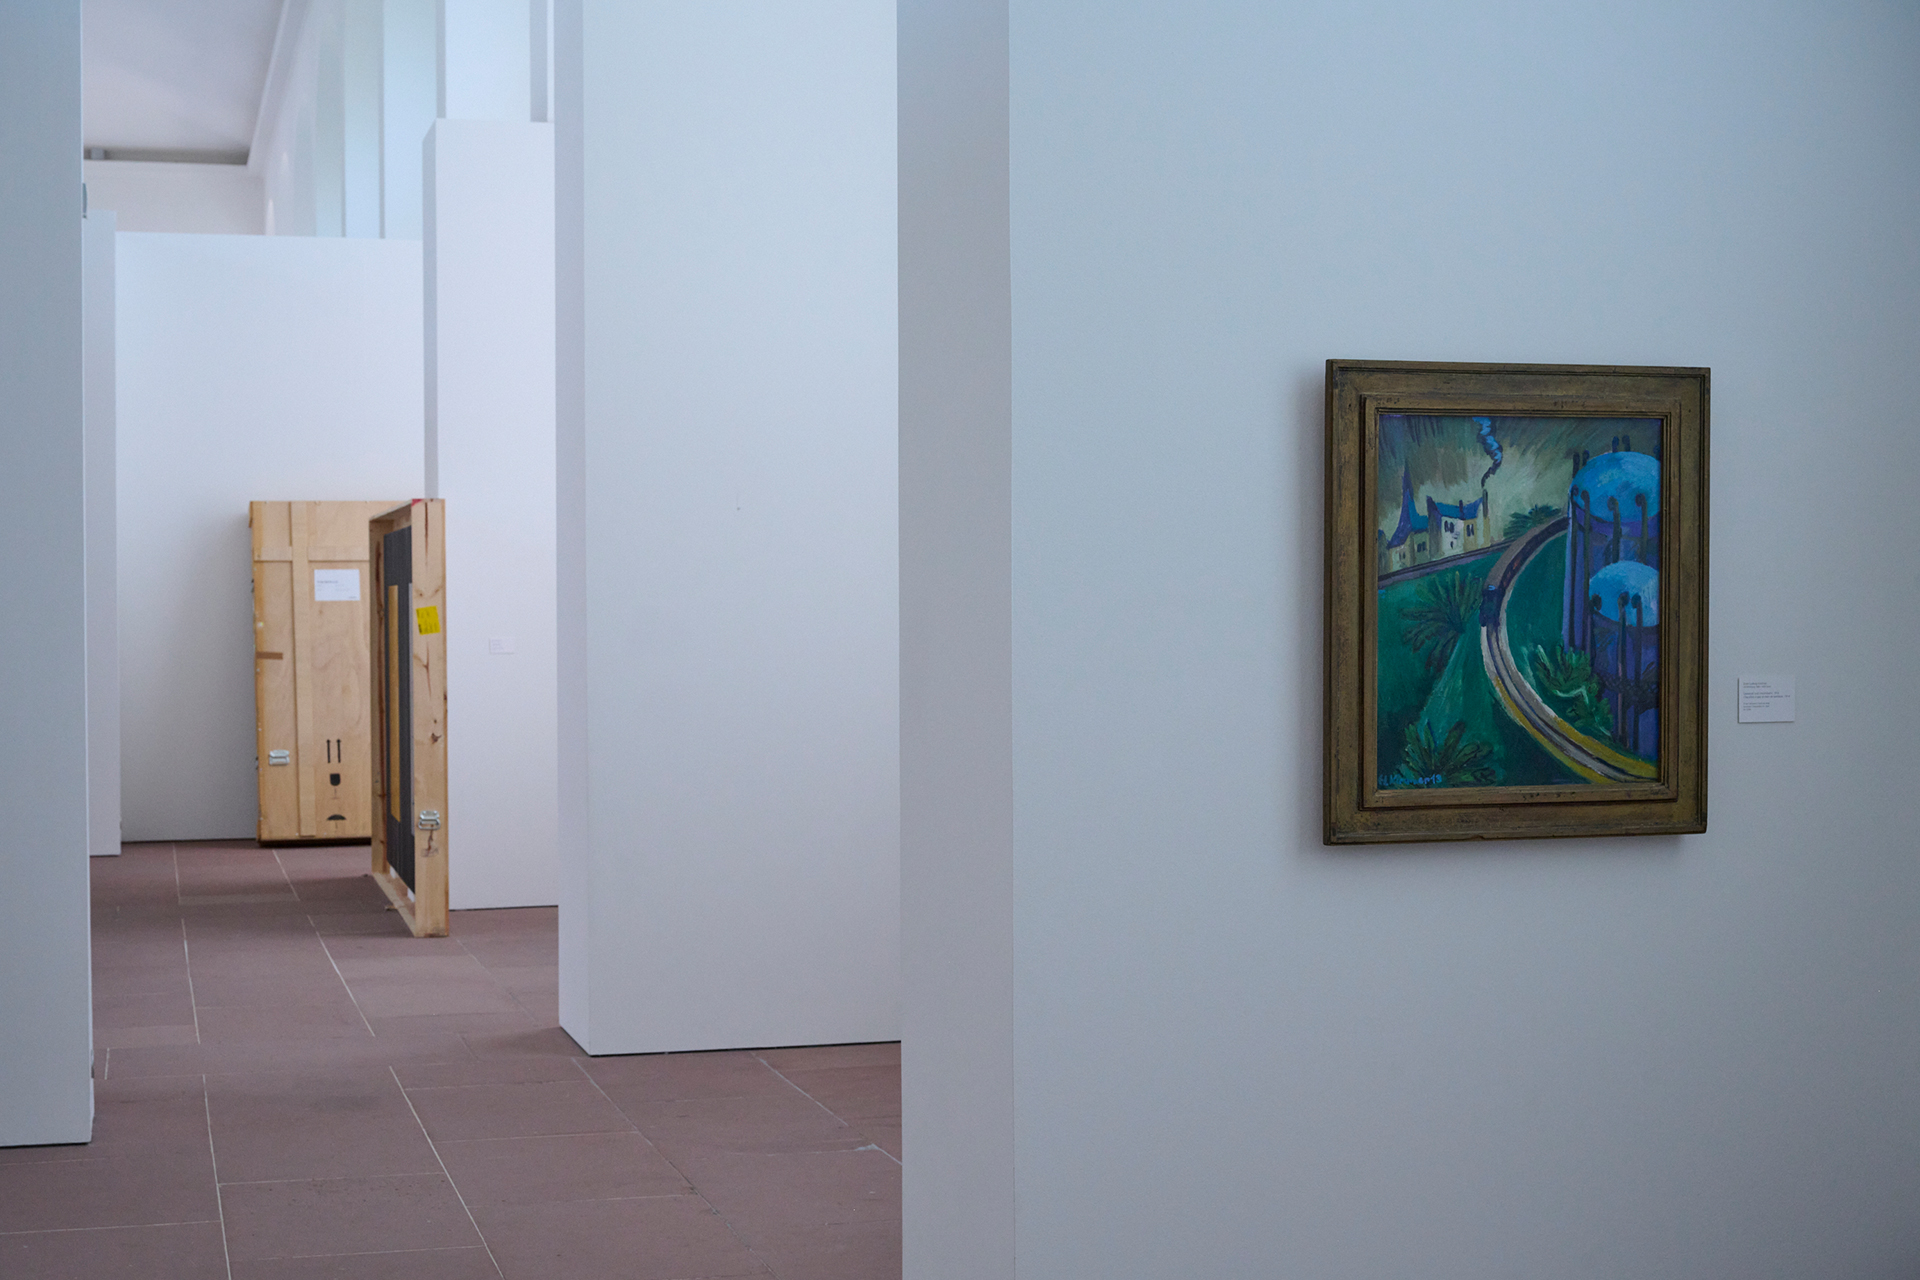 Foto von der Ausstellung in der Orangerie. Im Vordergrund ist ein Gemälde zu sehen. Im Hintergrund stehen Umzugskisten für Gemälde.